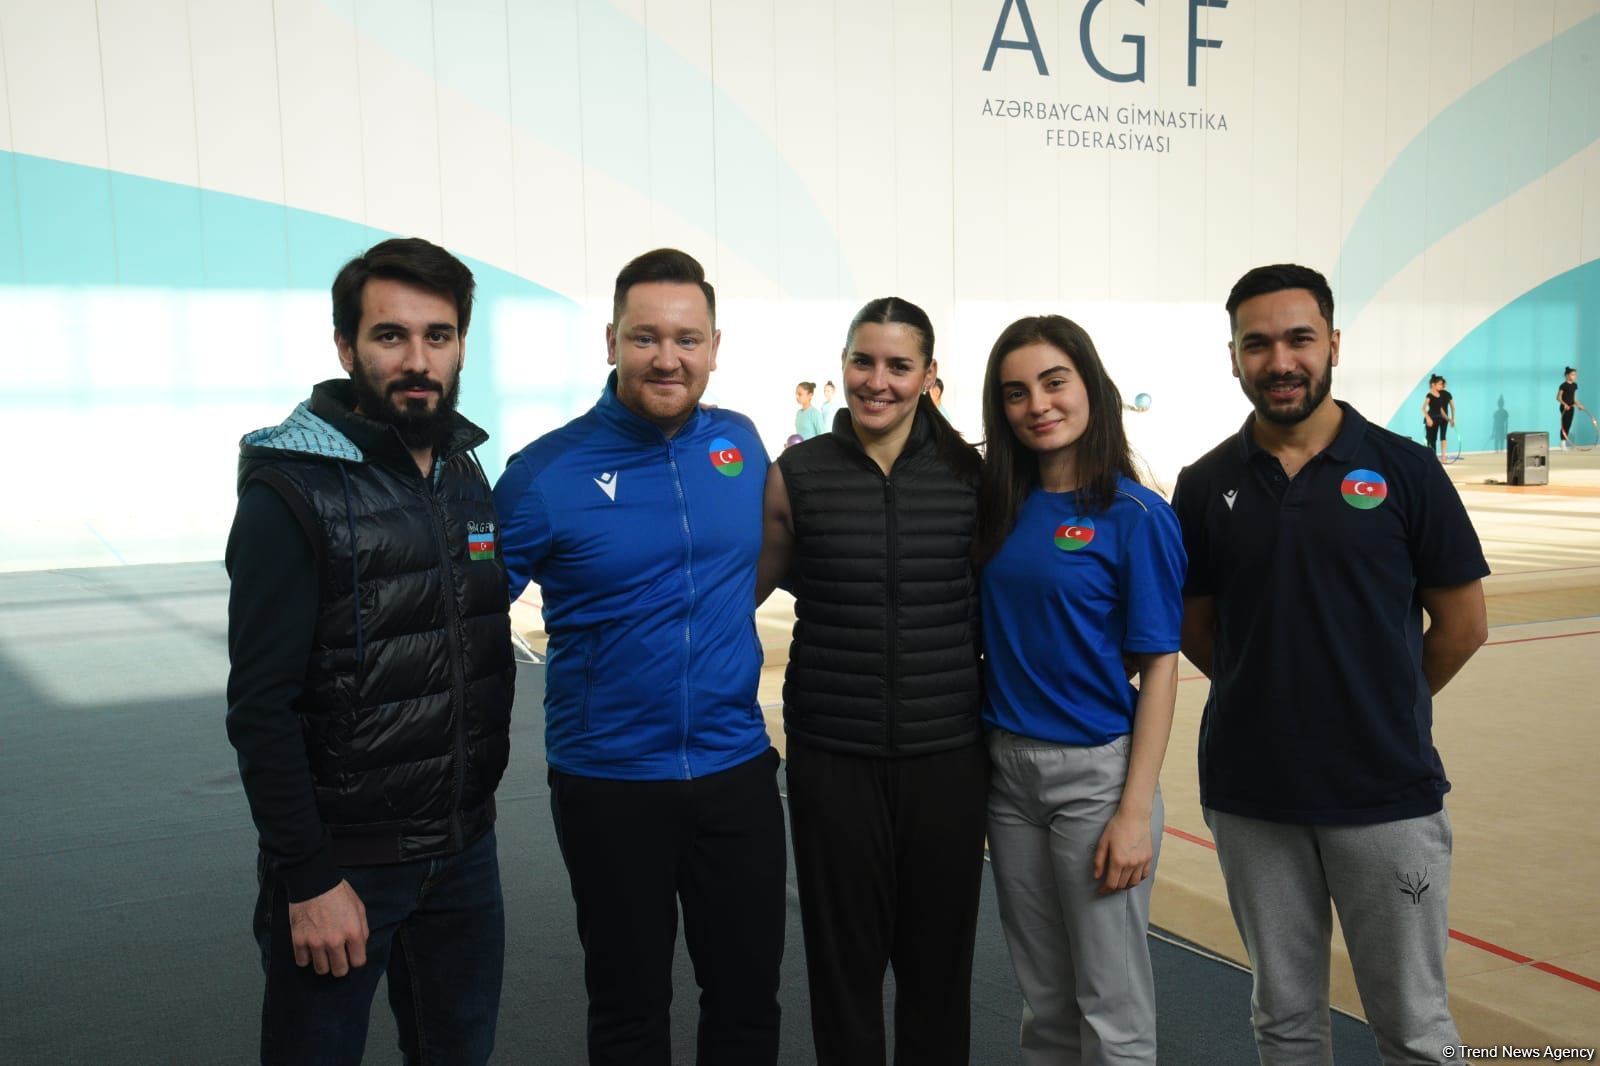 Азербайджанские гимнастки добились высоких результатов – испанский хореограф (ФОТО)